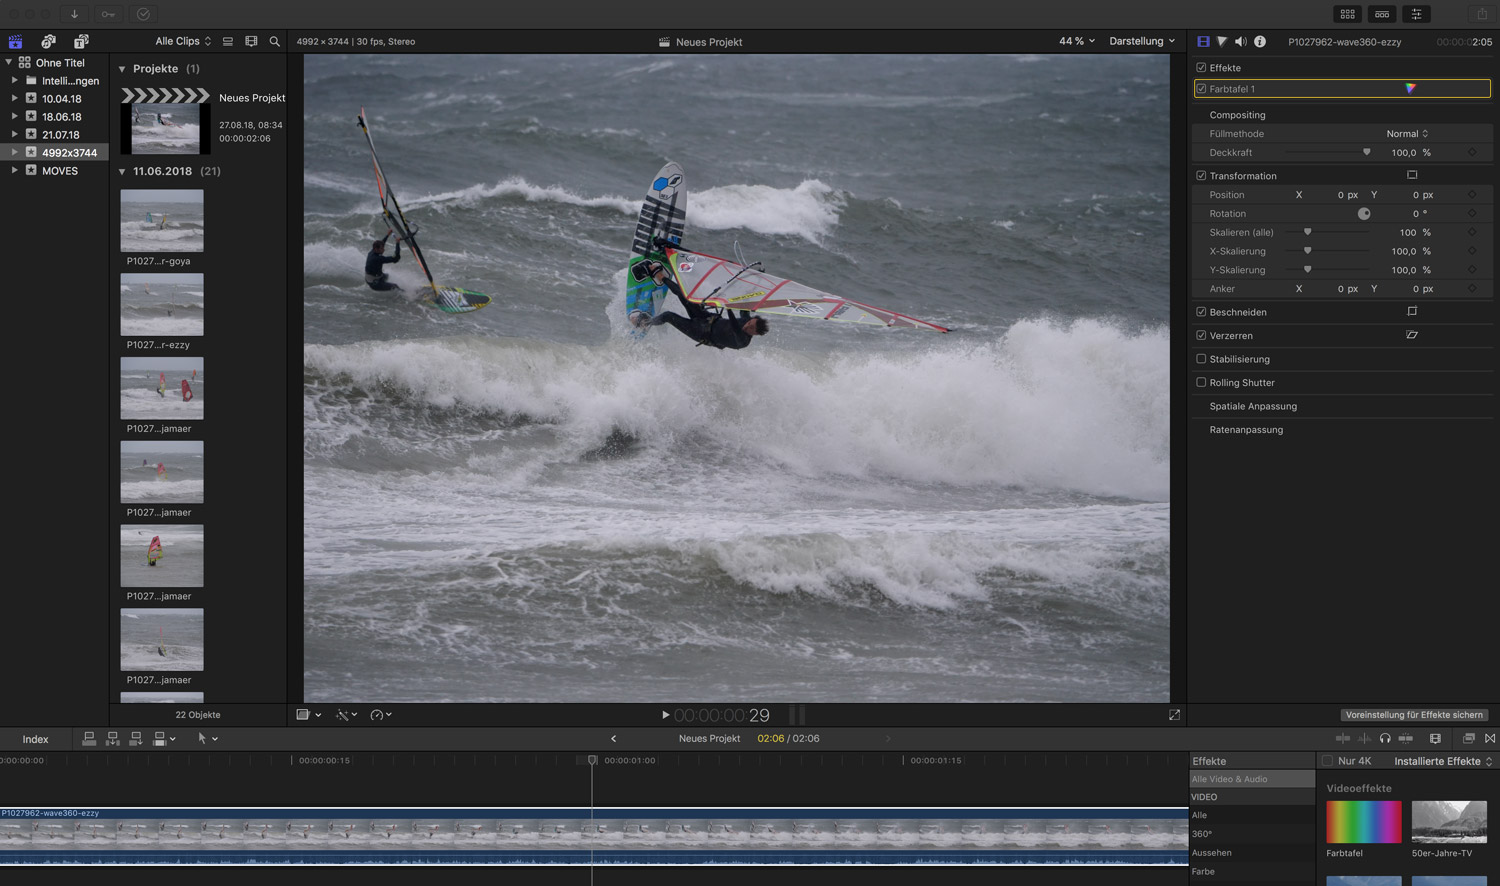 6K-Foto - Surffotos aus 6K-Videos extrahieren